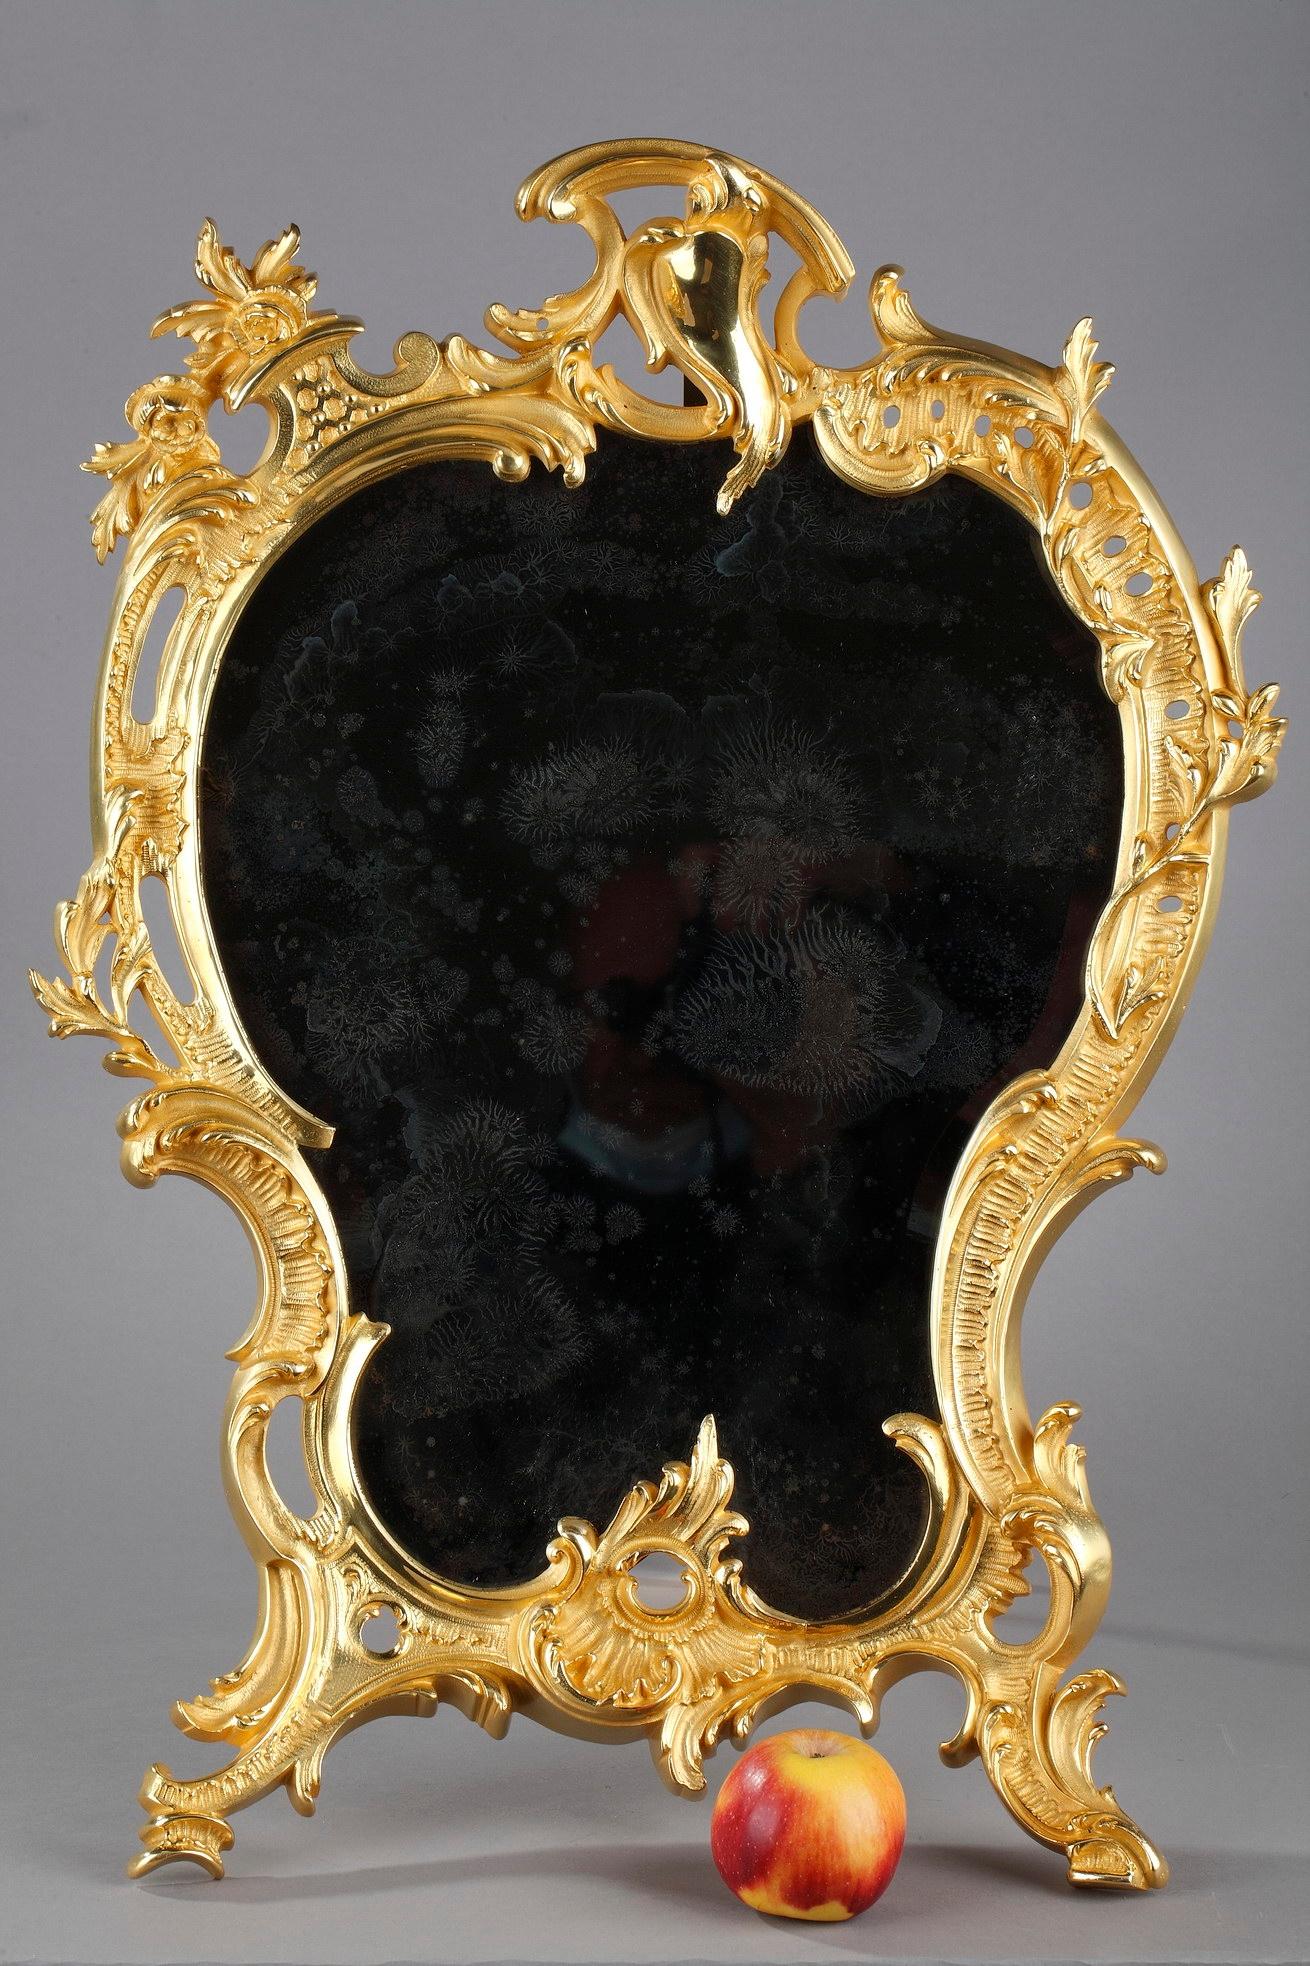 Dieses ornamentale Spiegelglas im Stil Louis XV fängt die Anmut des Rokoko ein. Der aus vergoldeter Bronze gefertigte Rahmen weist geschwungene, schwere Schnecken und Akanthus mit floralen Details auf. Ein singender Vogel ziert den oberen Teil des